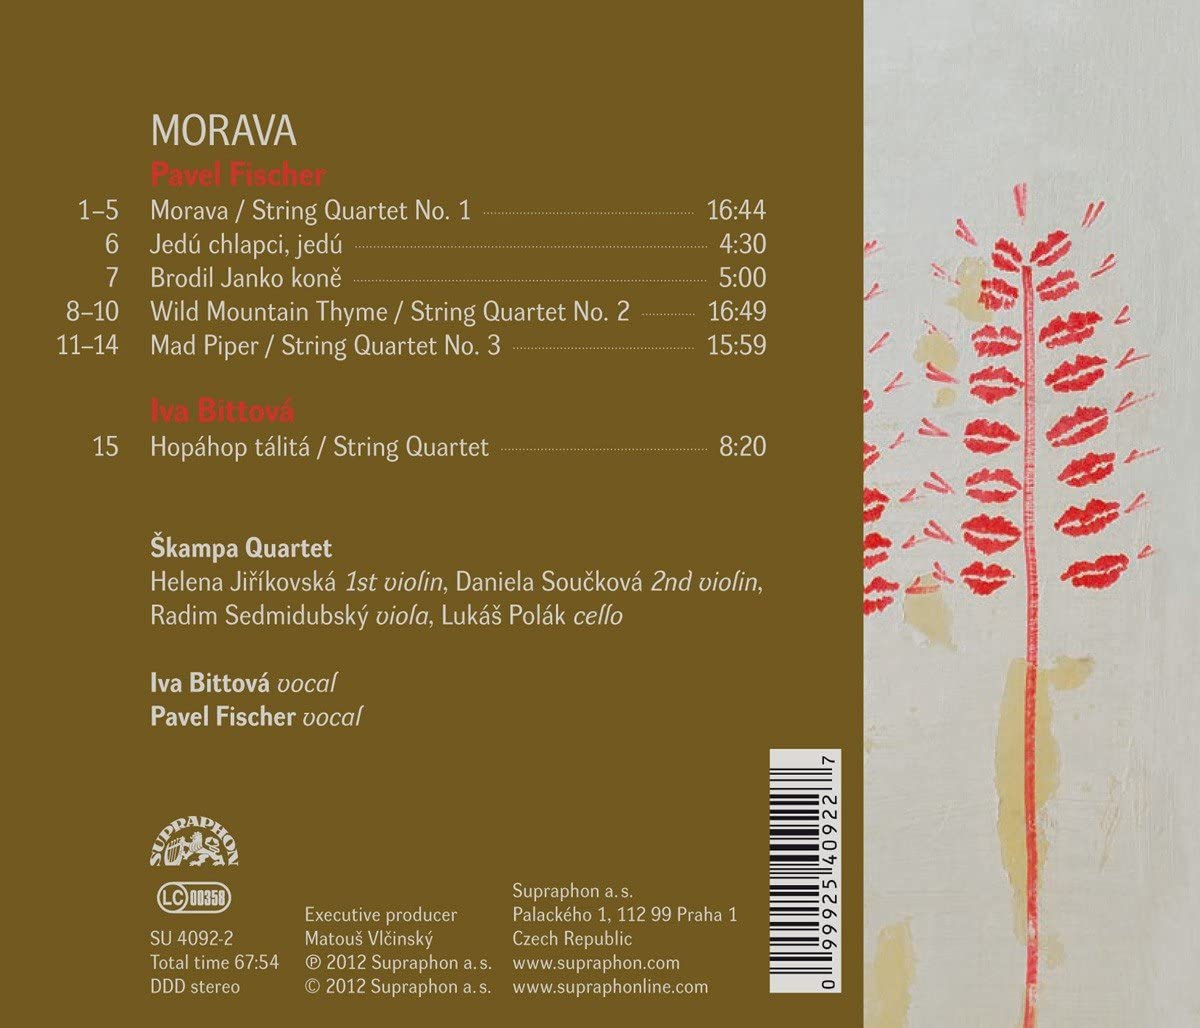 Morava - Pavel Fischer: Kwartety smyczkowe nr 1 - 3, utwory na kwartet smyczkowy i głos - slide-1